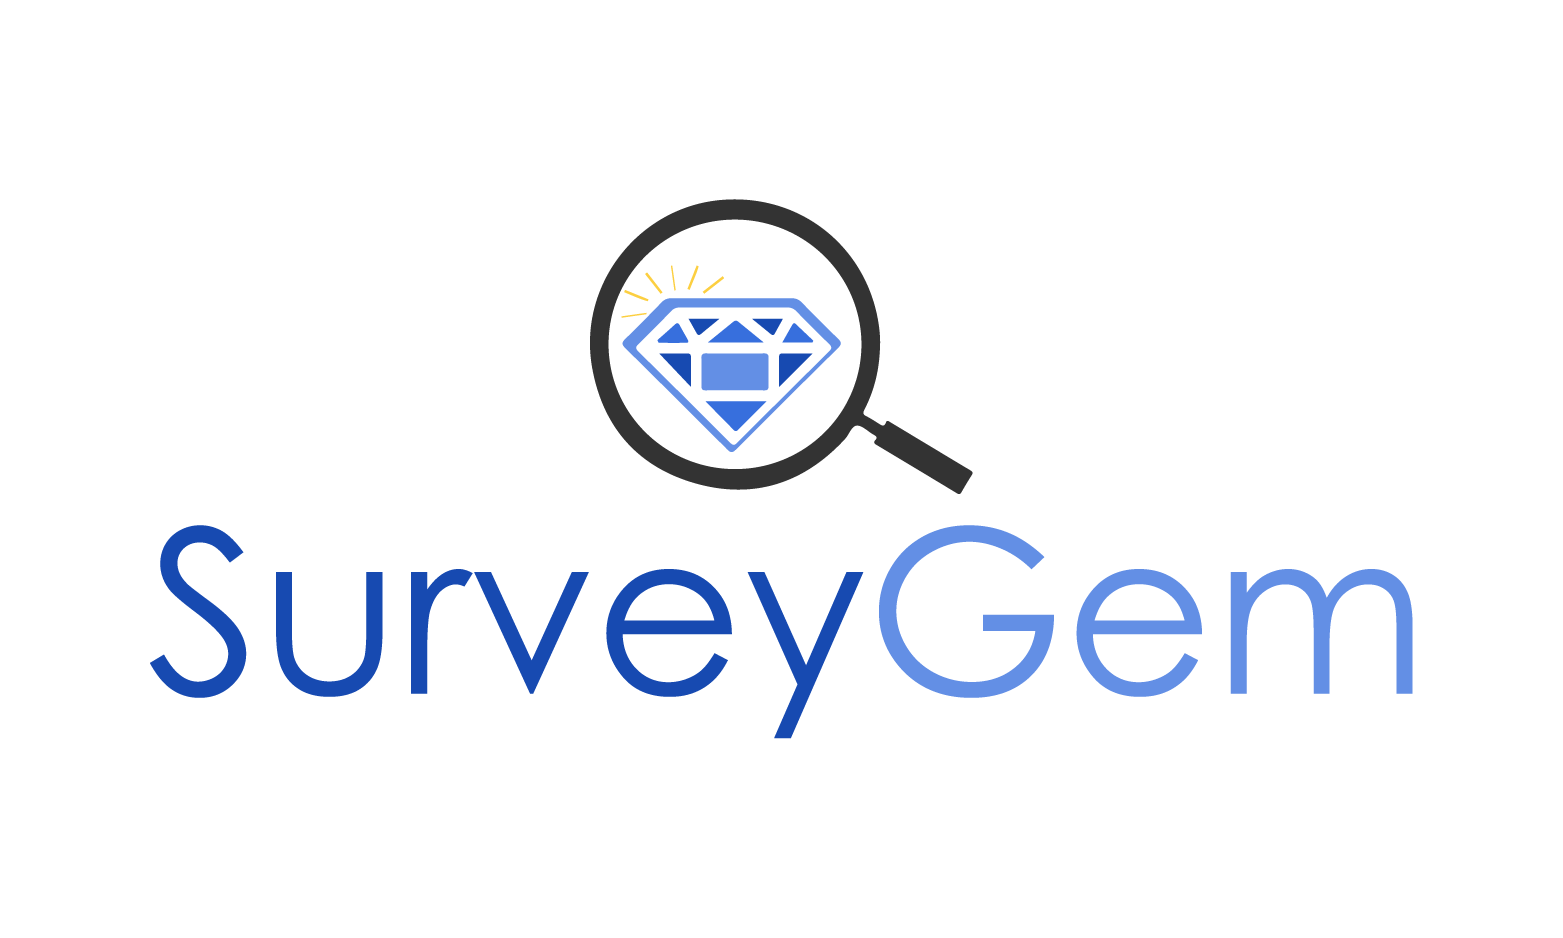 SurveyGem.com - Creative brandable domain for sale